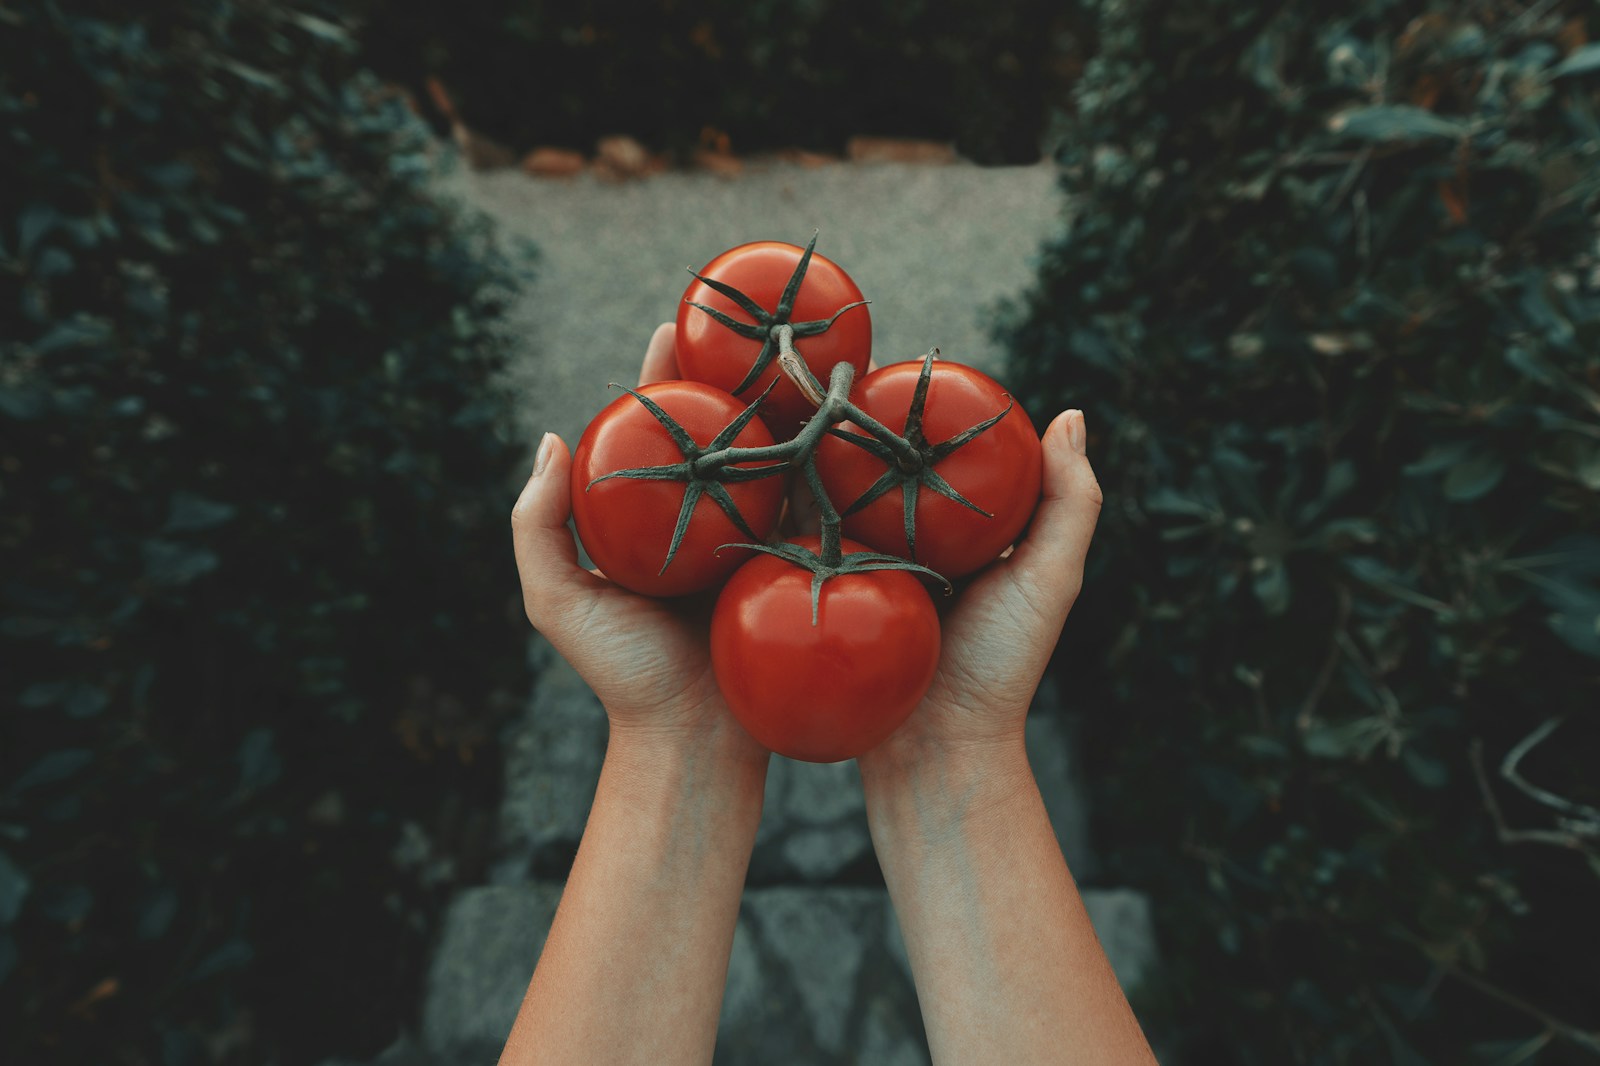 Toto nesaďte vedľa paradajok, lebo im vezmú všetky živiny